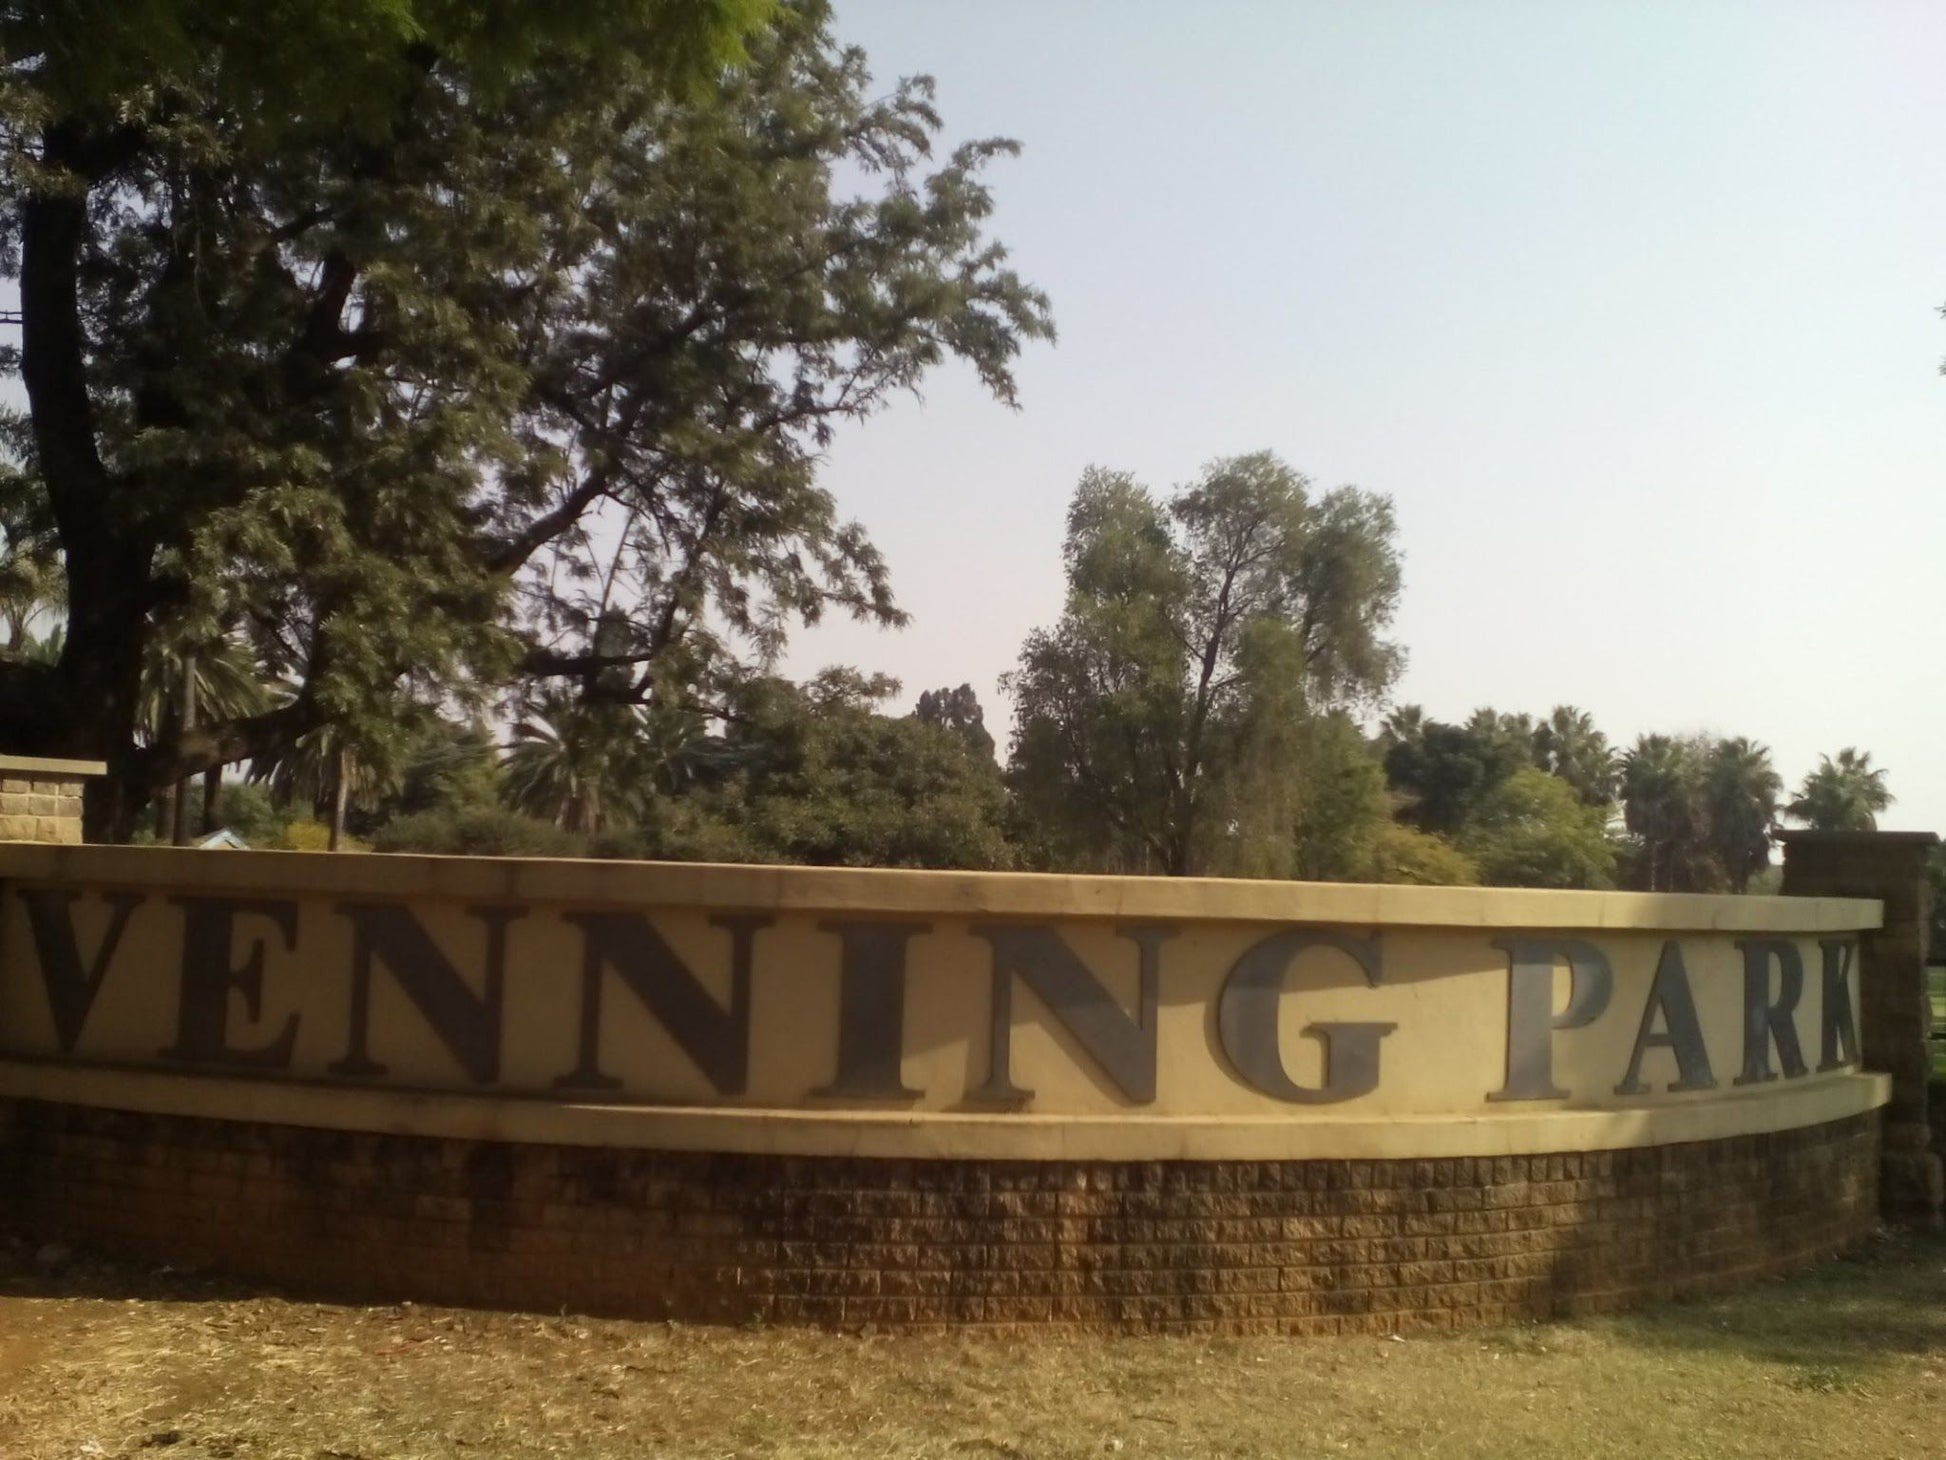  Venning Park